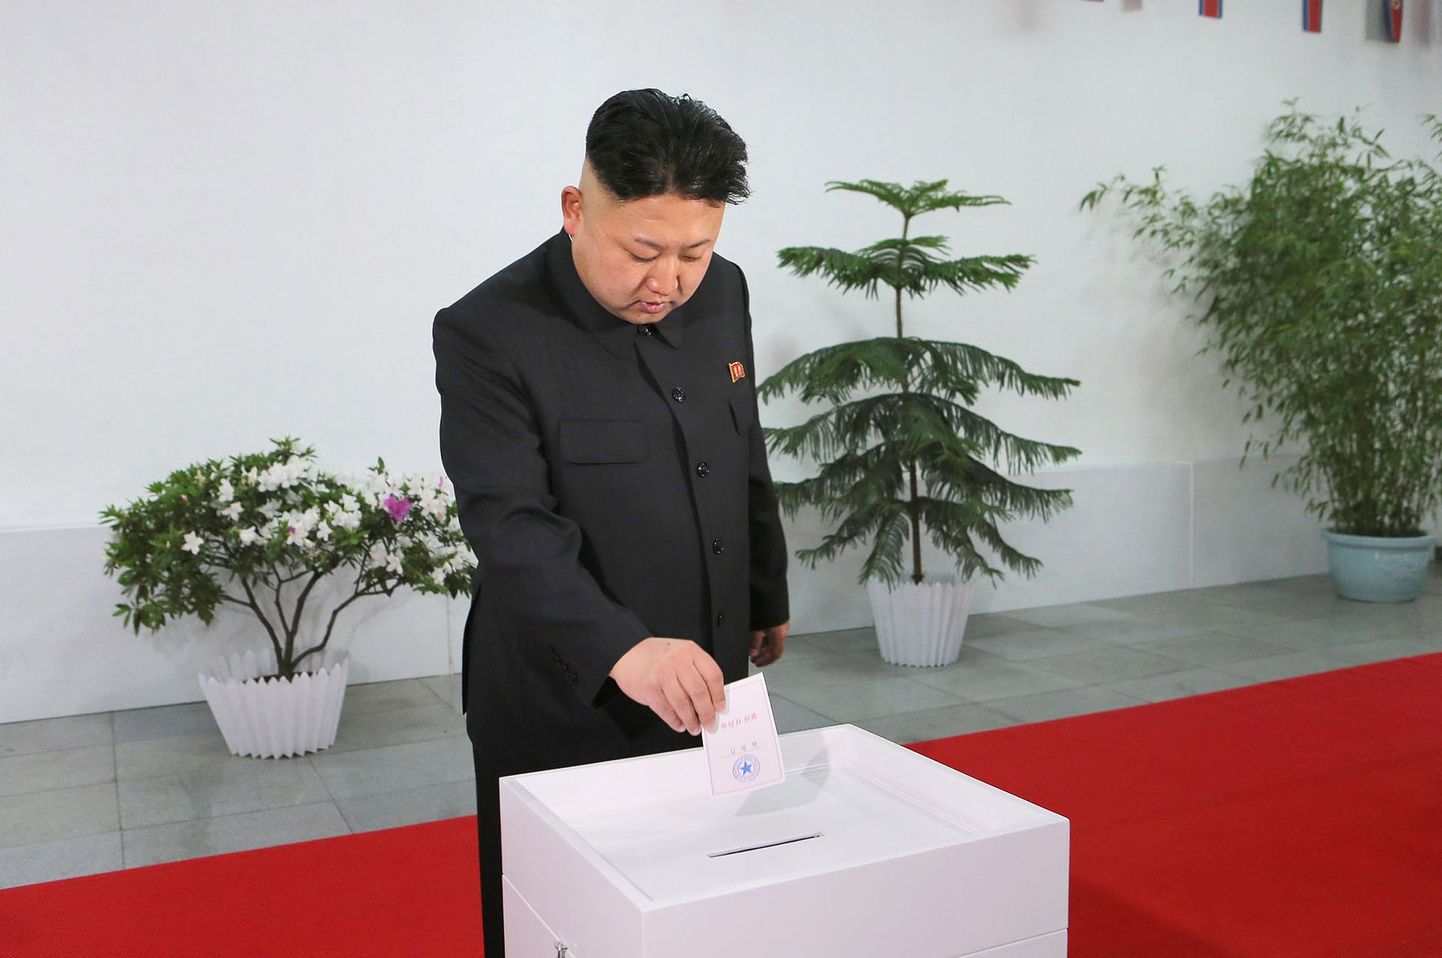 Riigijuht Kim jong-un annab 2014 aasta üldvalimistel oma hääle.